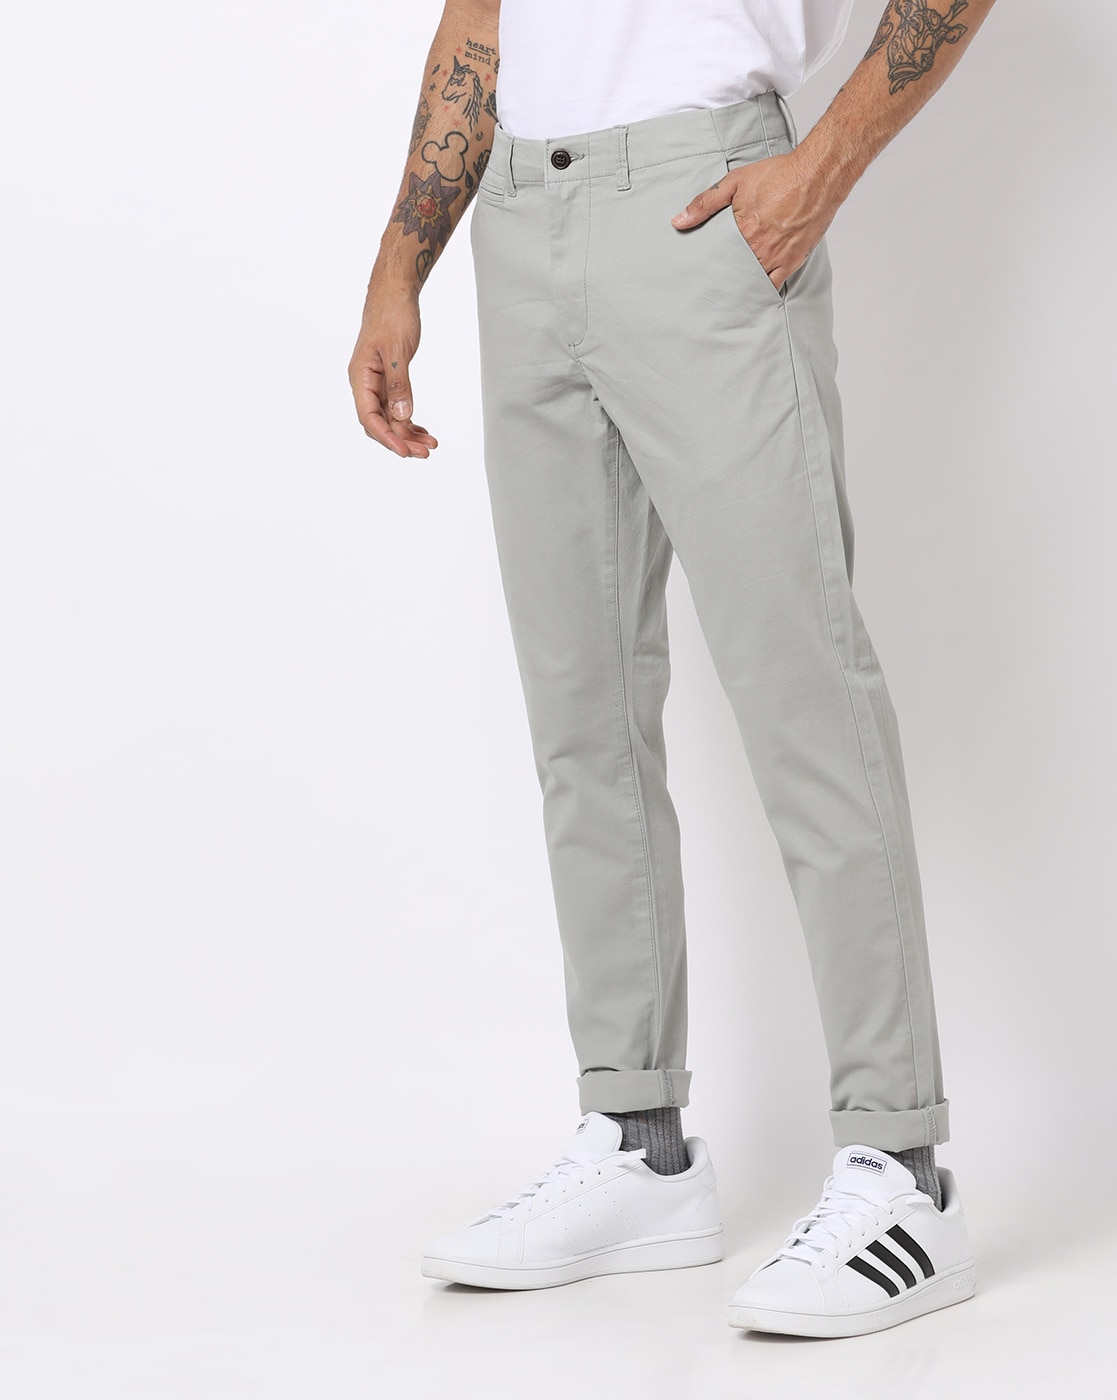 JACK  JONES Slim Fit Men Grey Trousers  Buy JACK  JONES Slim Fit Men  Grey Trousers Online at Best Prices in India  Flipkartcom